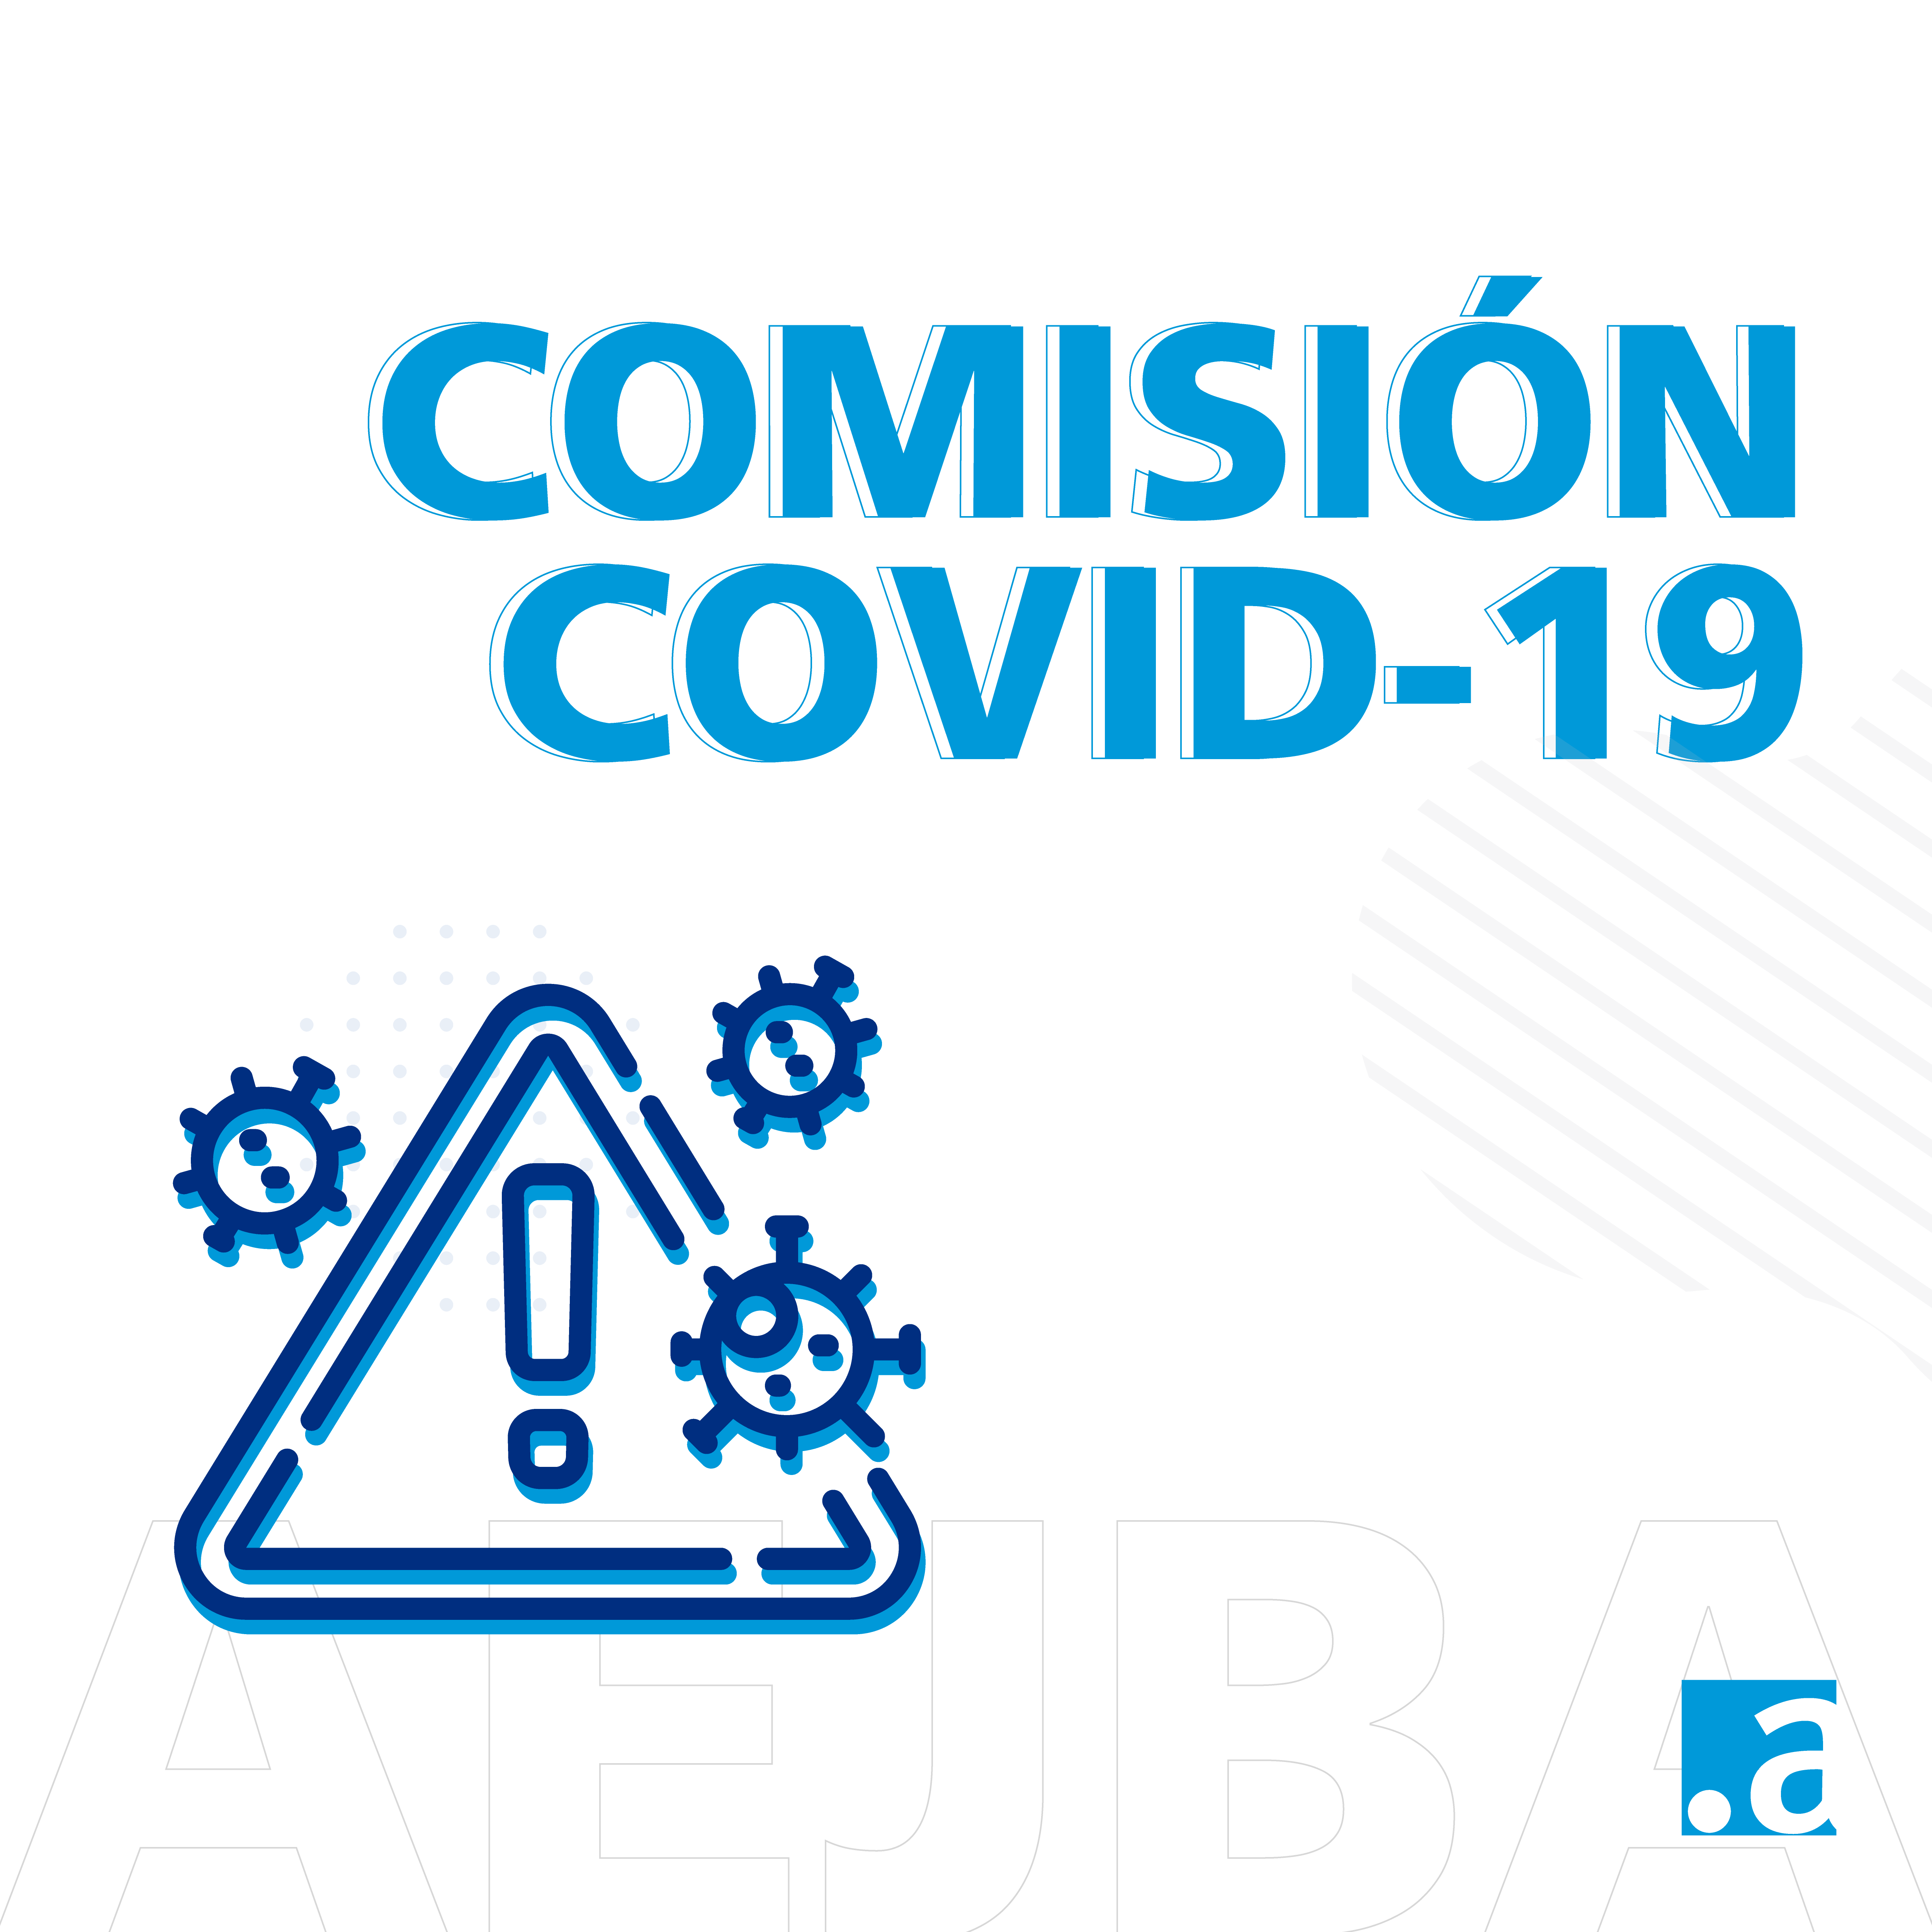 COMISIÓN COVID-19